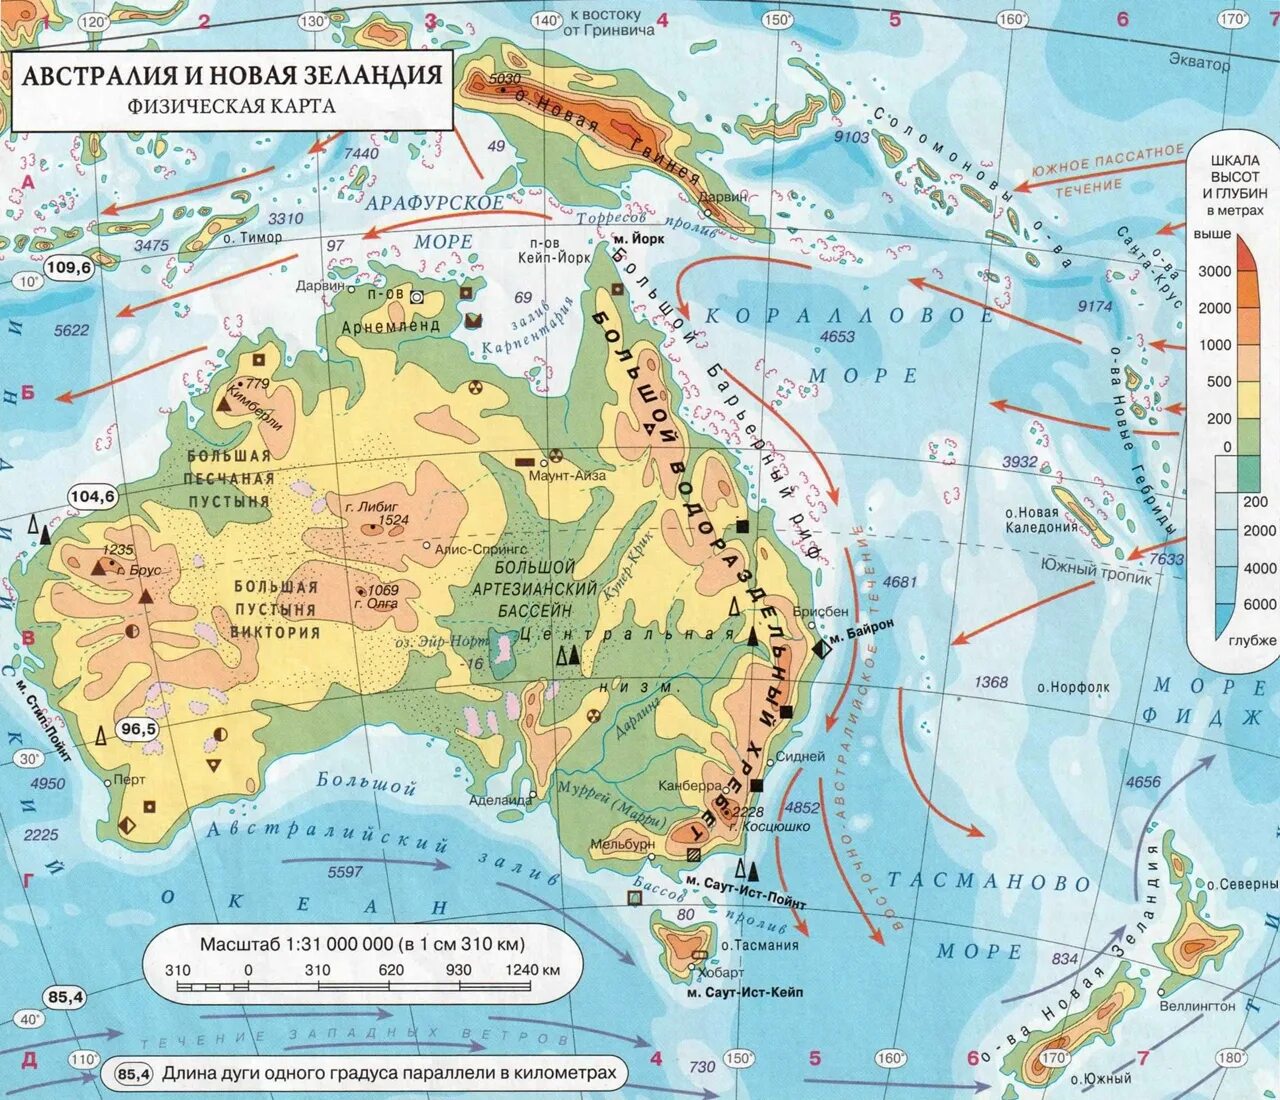 Моря: Арафурское, коралловое и тасманово.. Физ карта Австралии. Моря в Австралии Тиморское Арафурское коралловое. Материк Австралия физическая карта.